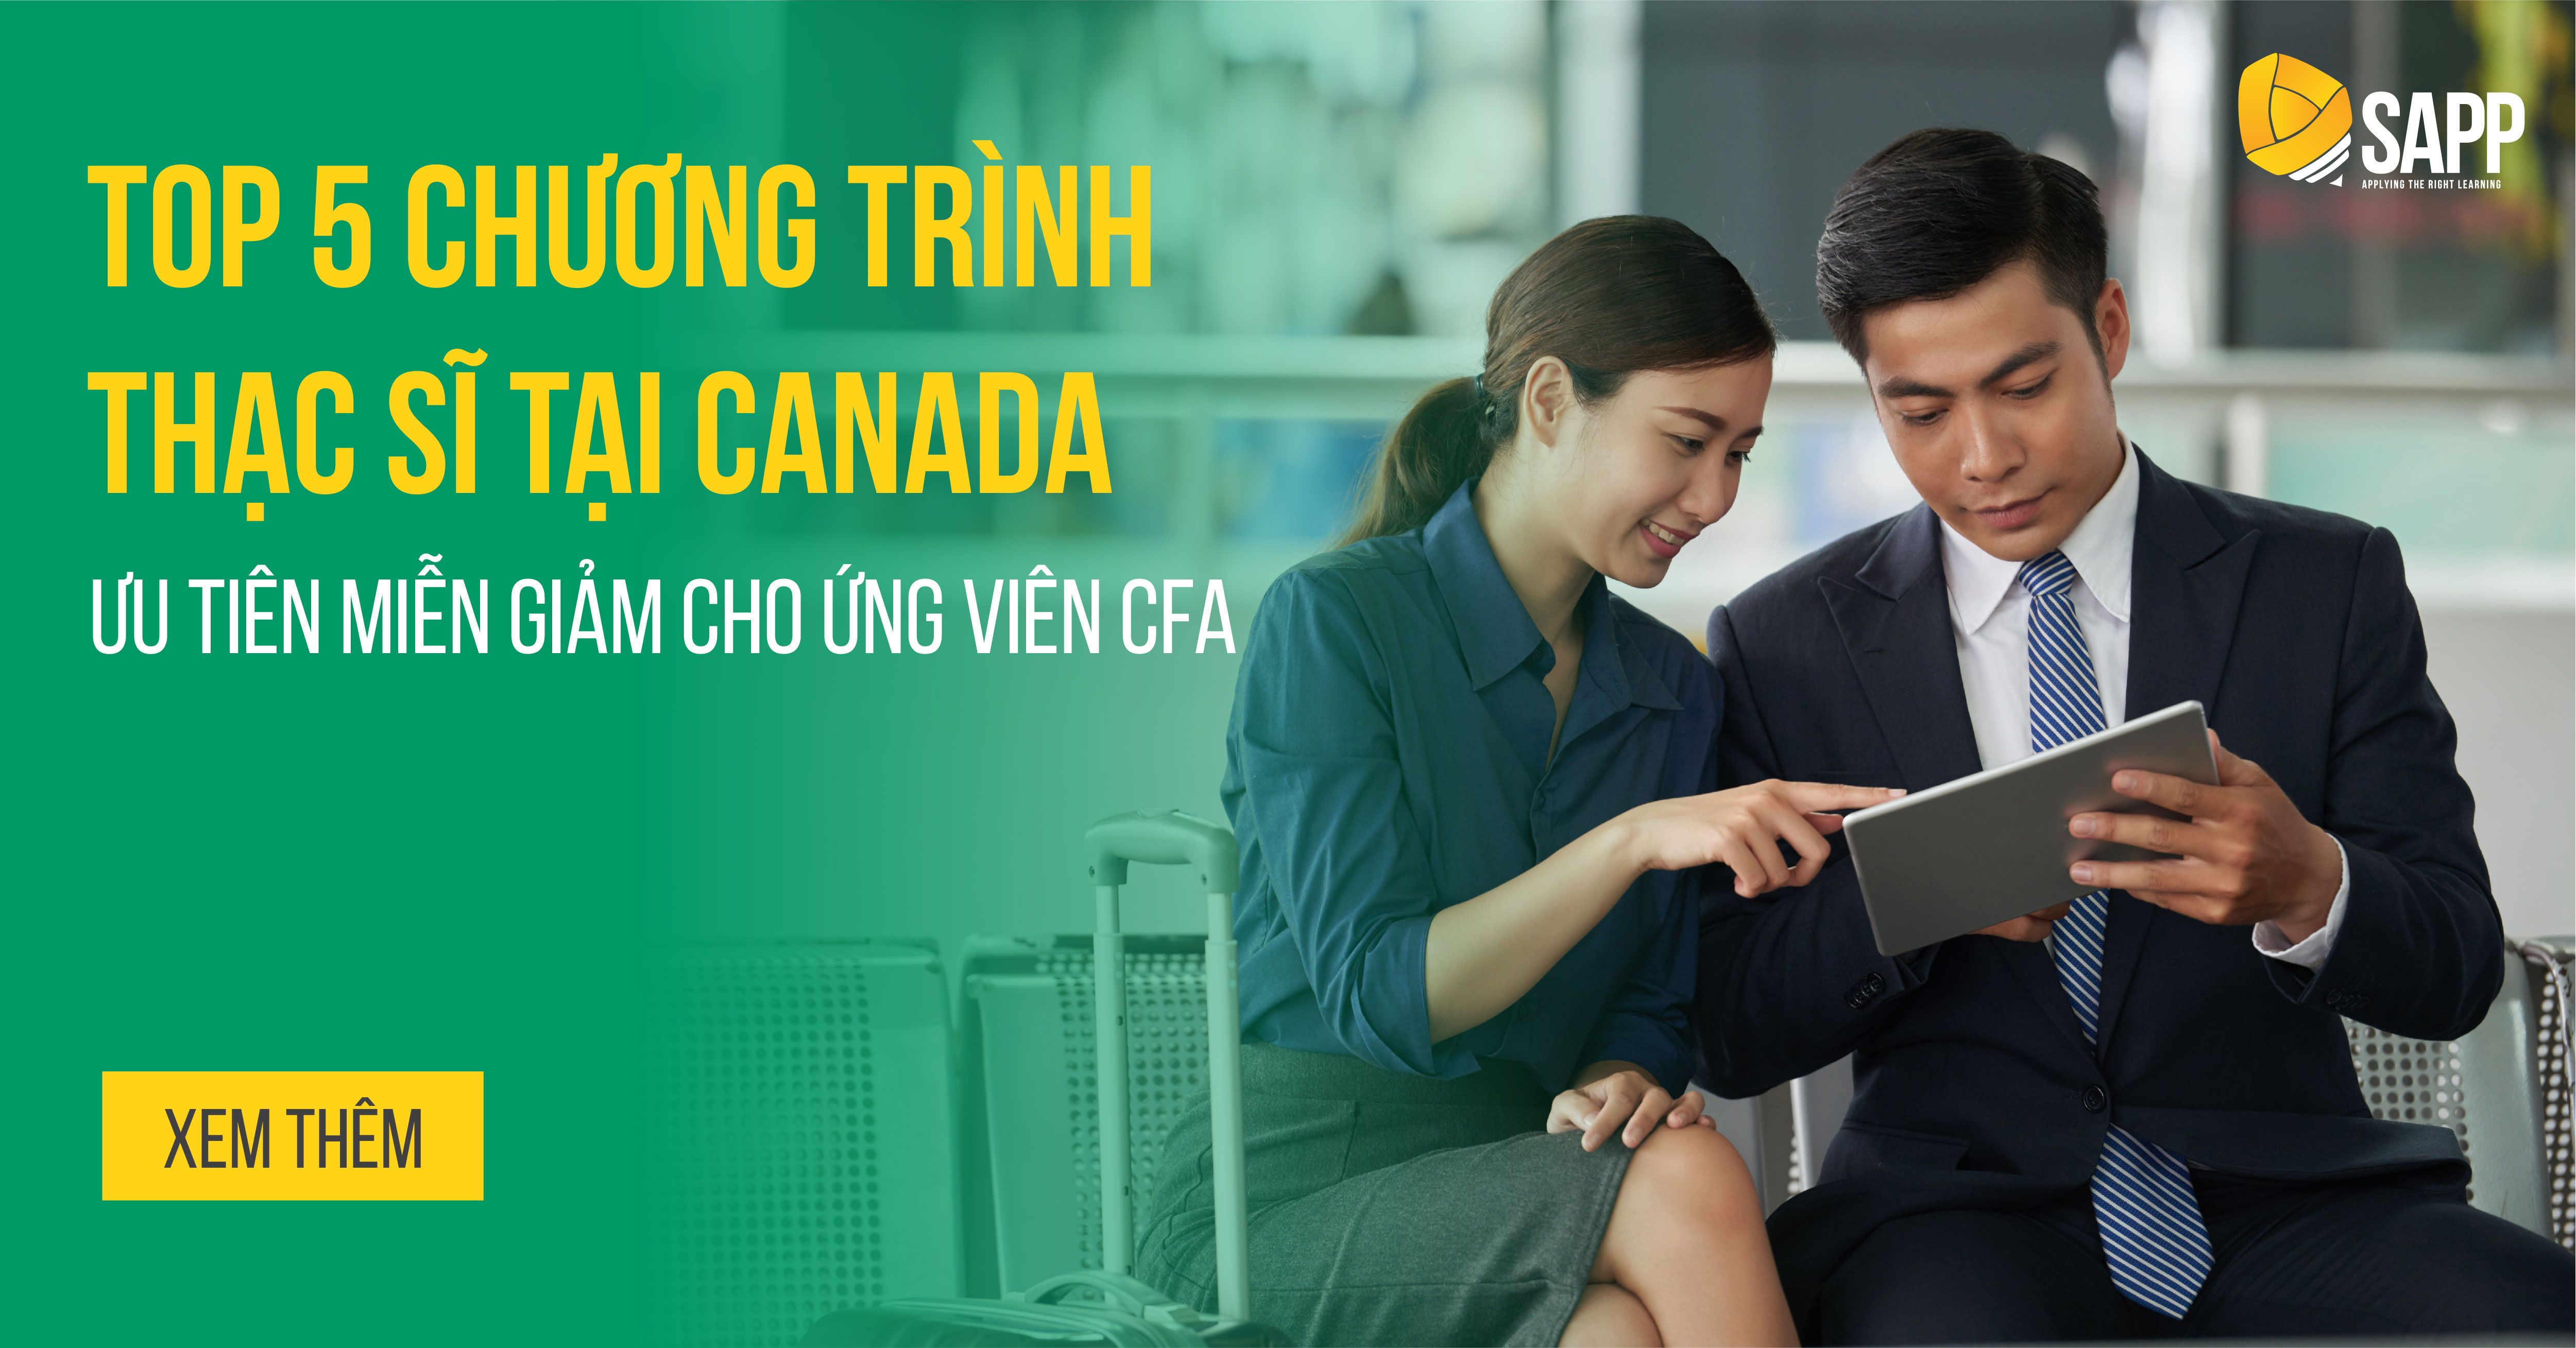  Top 5 Chương Trình Thạc Sĩ Tại Canada Ưu Tiên Miễn Giảm Cho Ứng Viên CFA